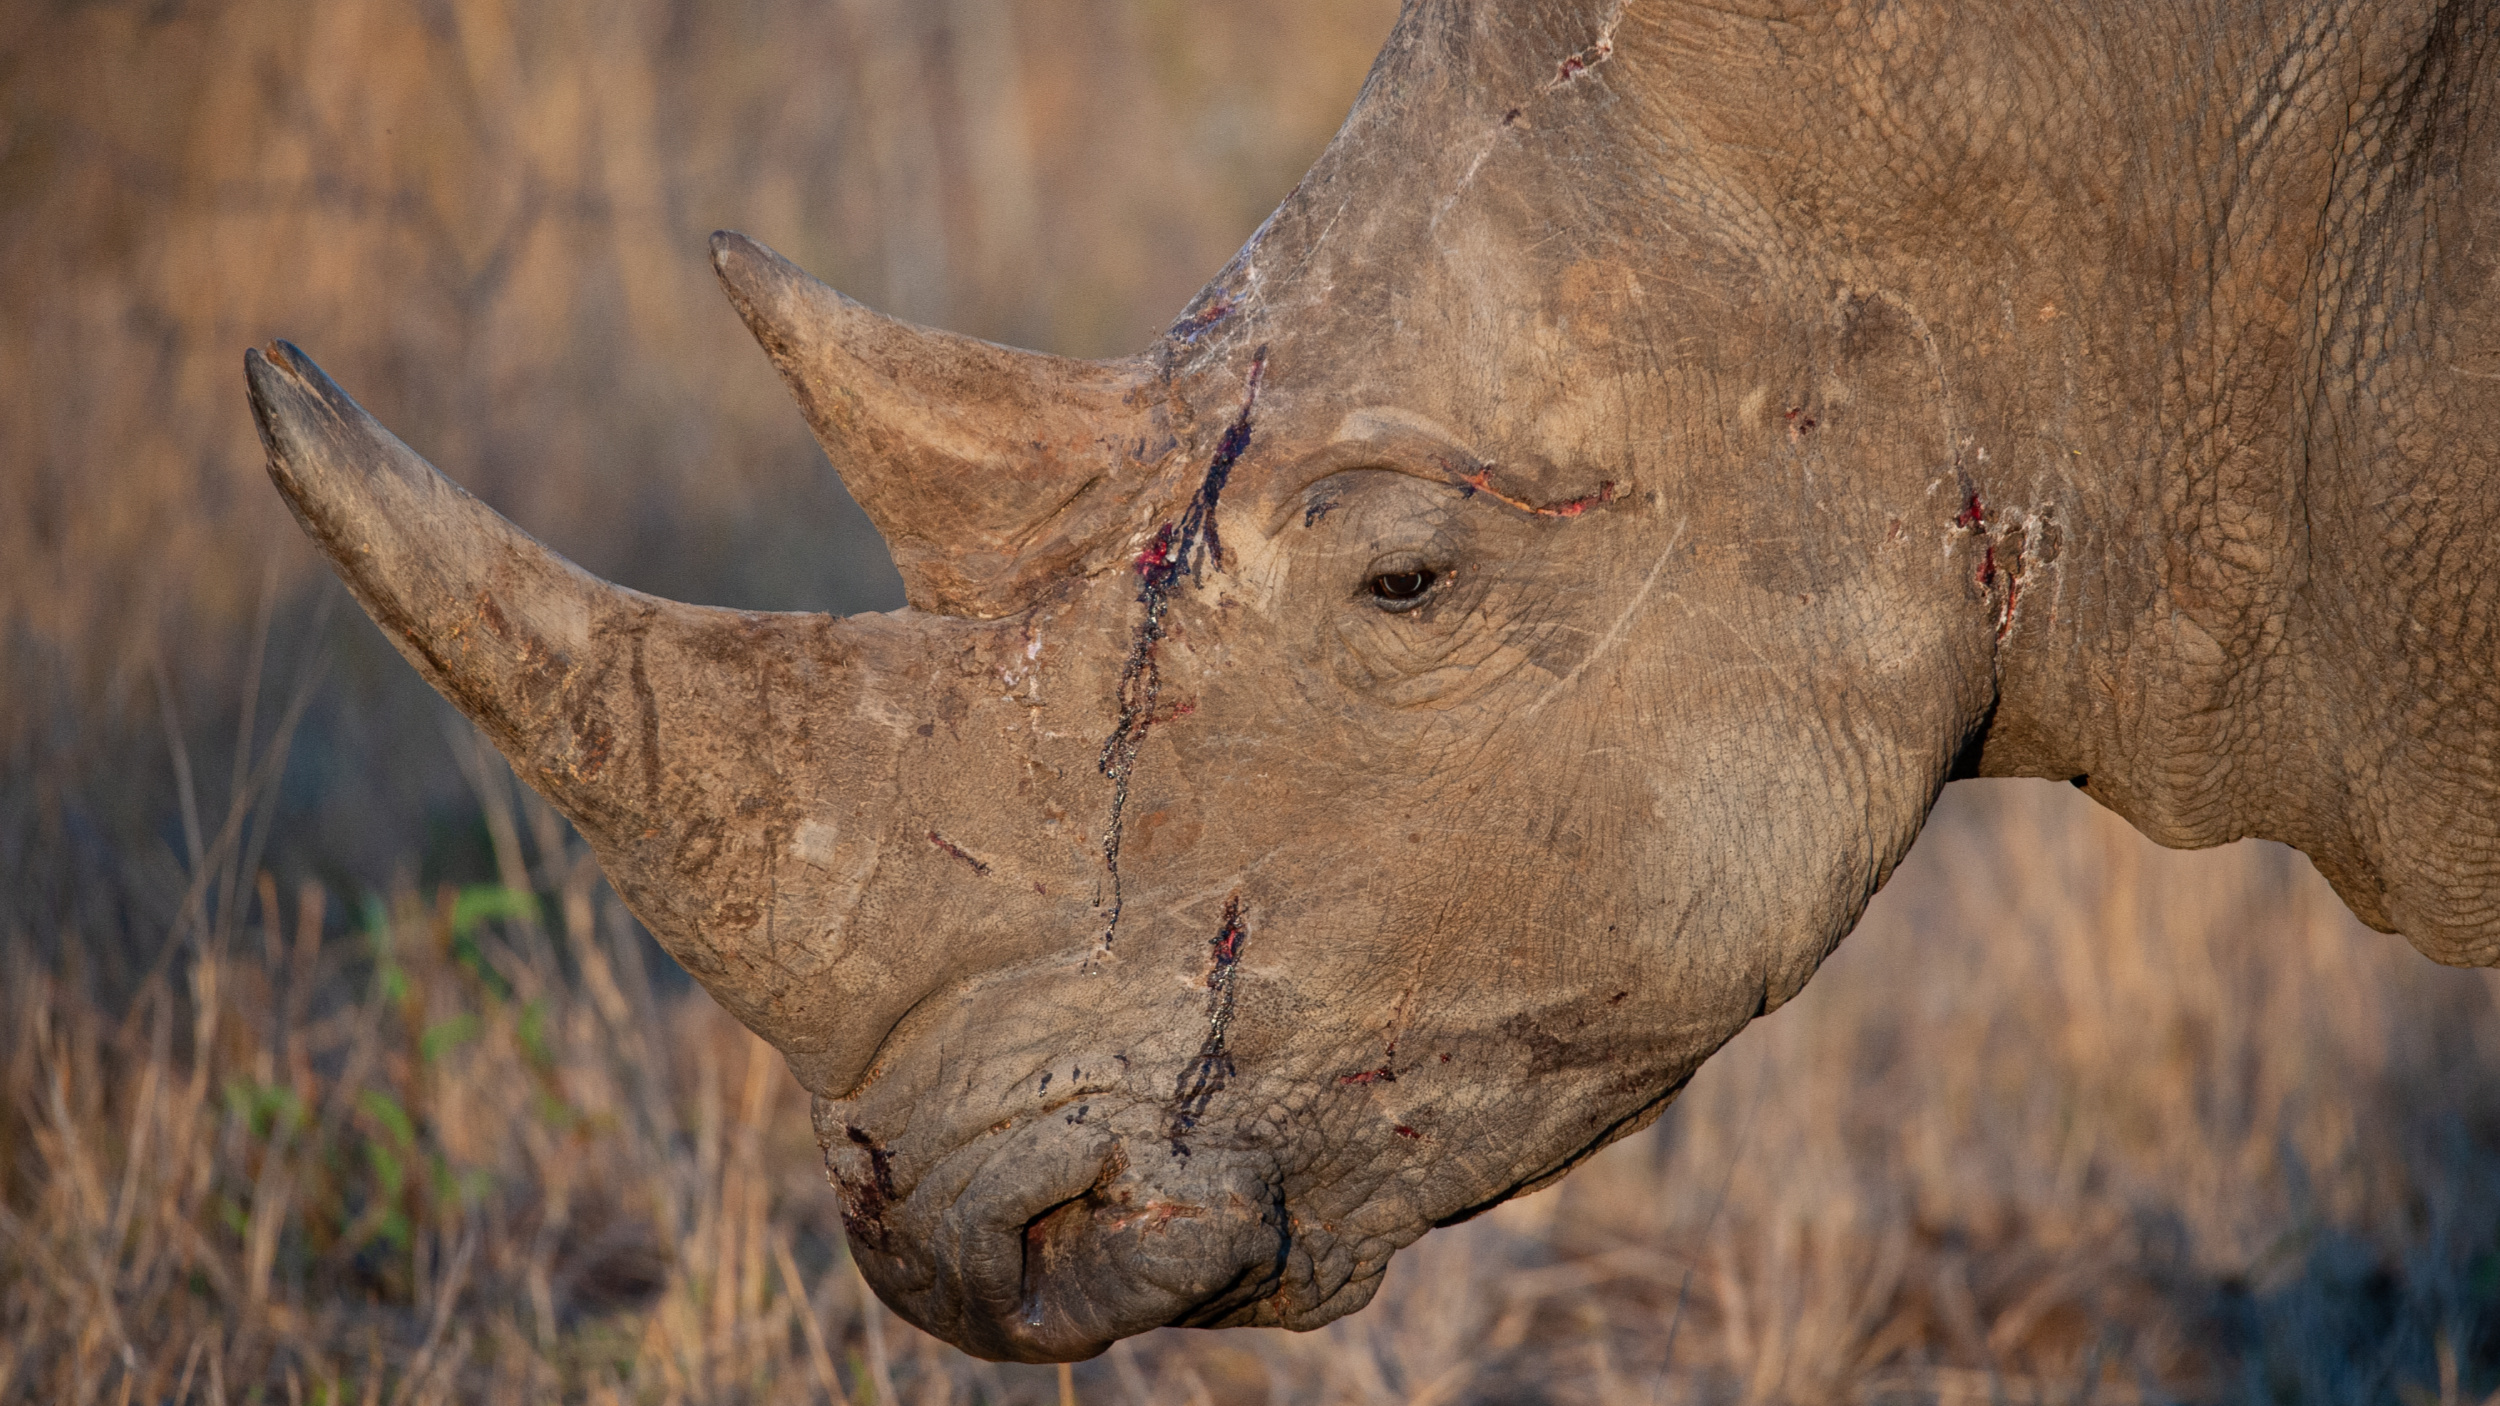 https://natureneedsmore.org/wp-content/uploads/2015/09/Wild-Rhino-Not-Farmed.jpg